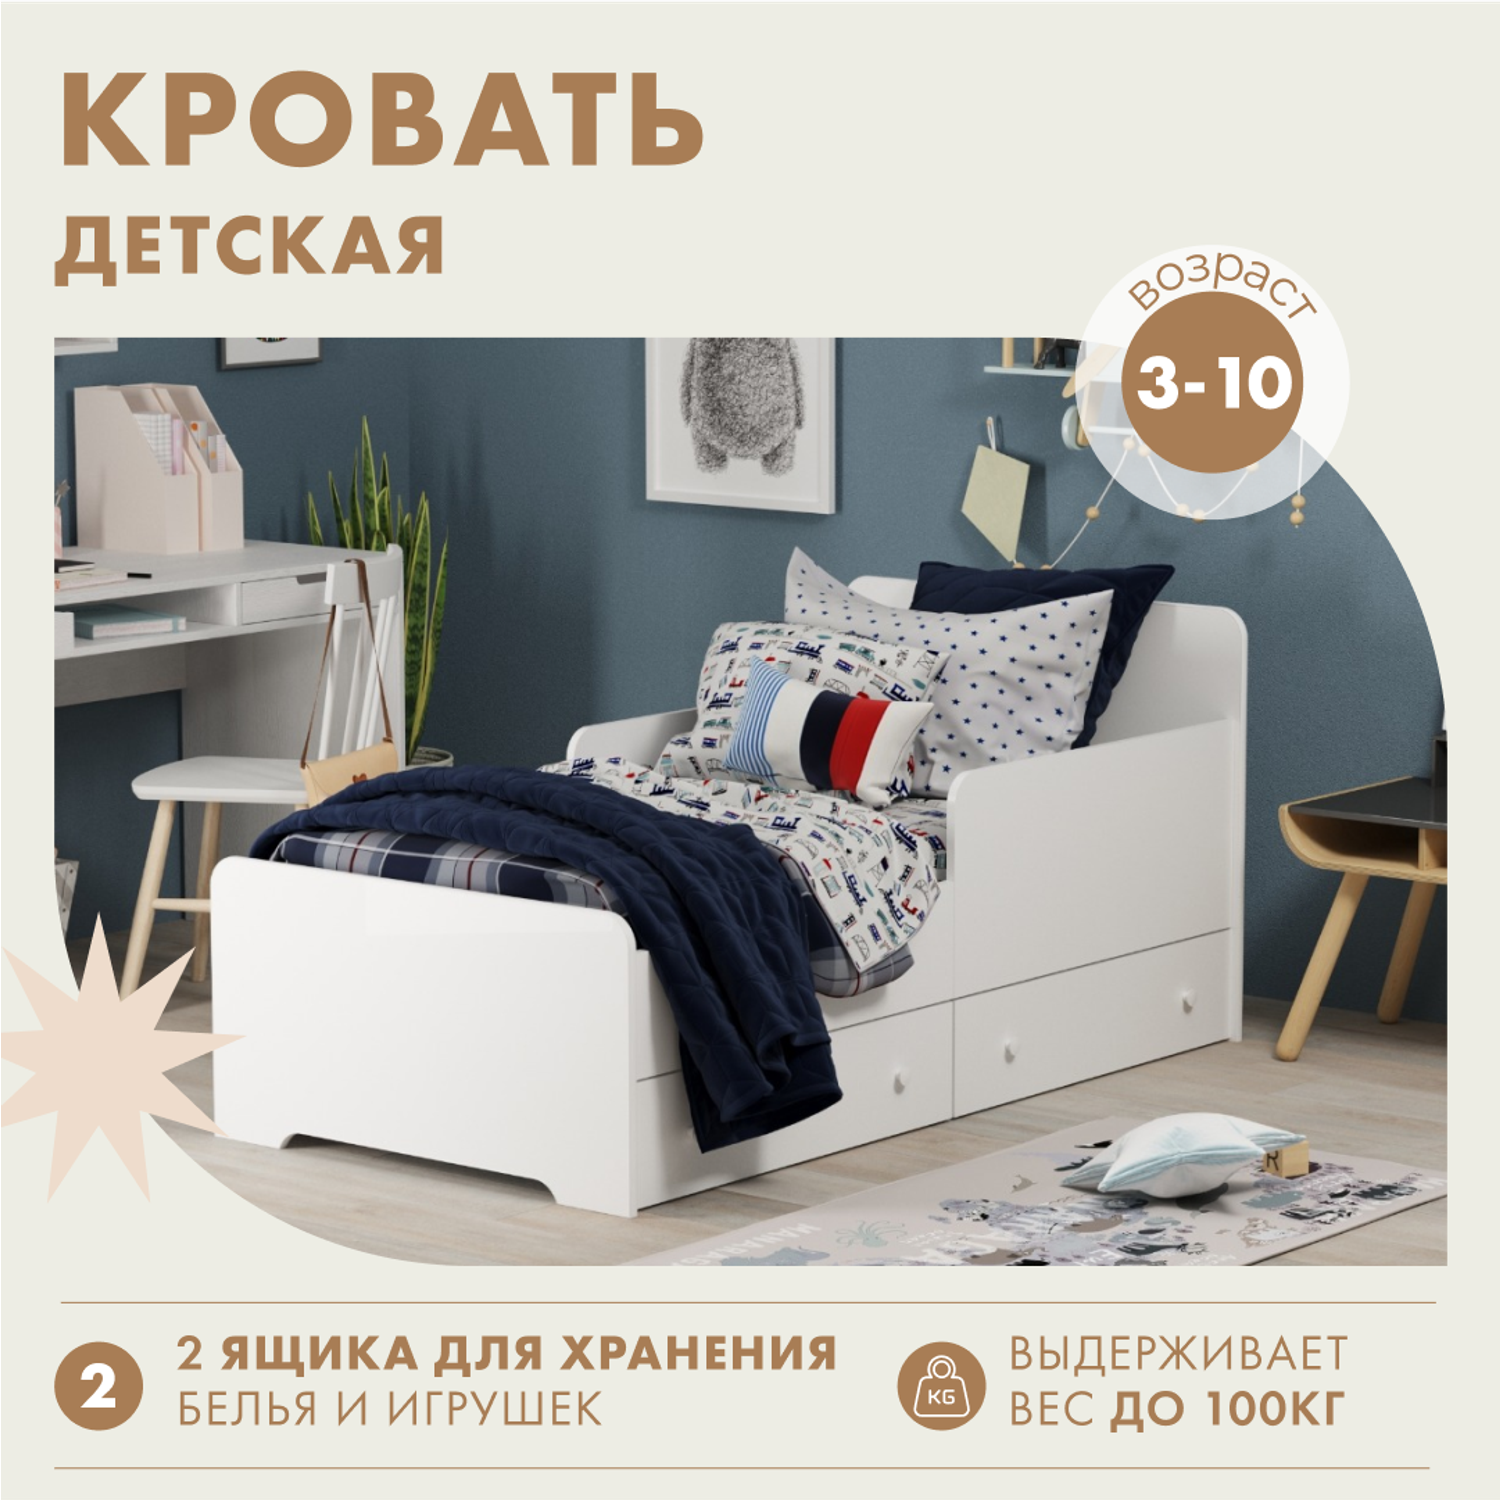 Детские кровати с ящиками для хранения в интернет-магазине MnogoDivanov.ru от 2310 руб.